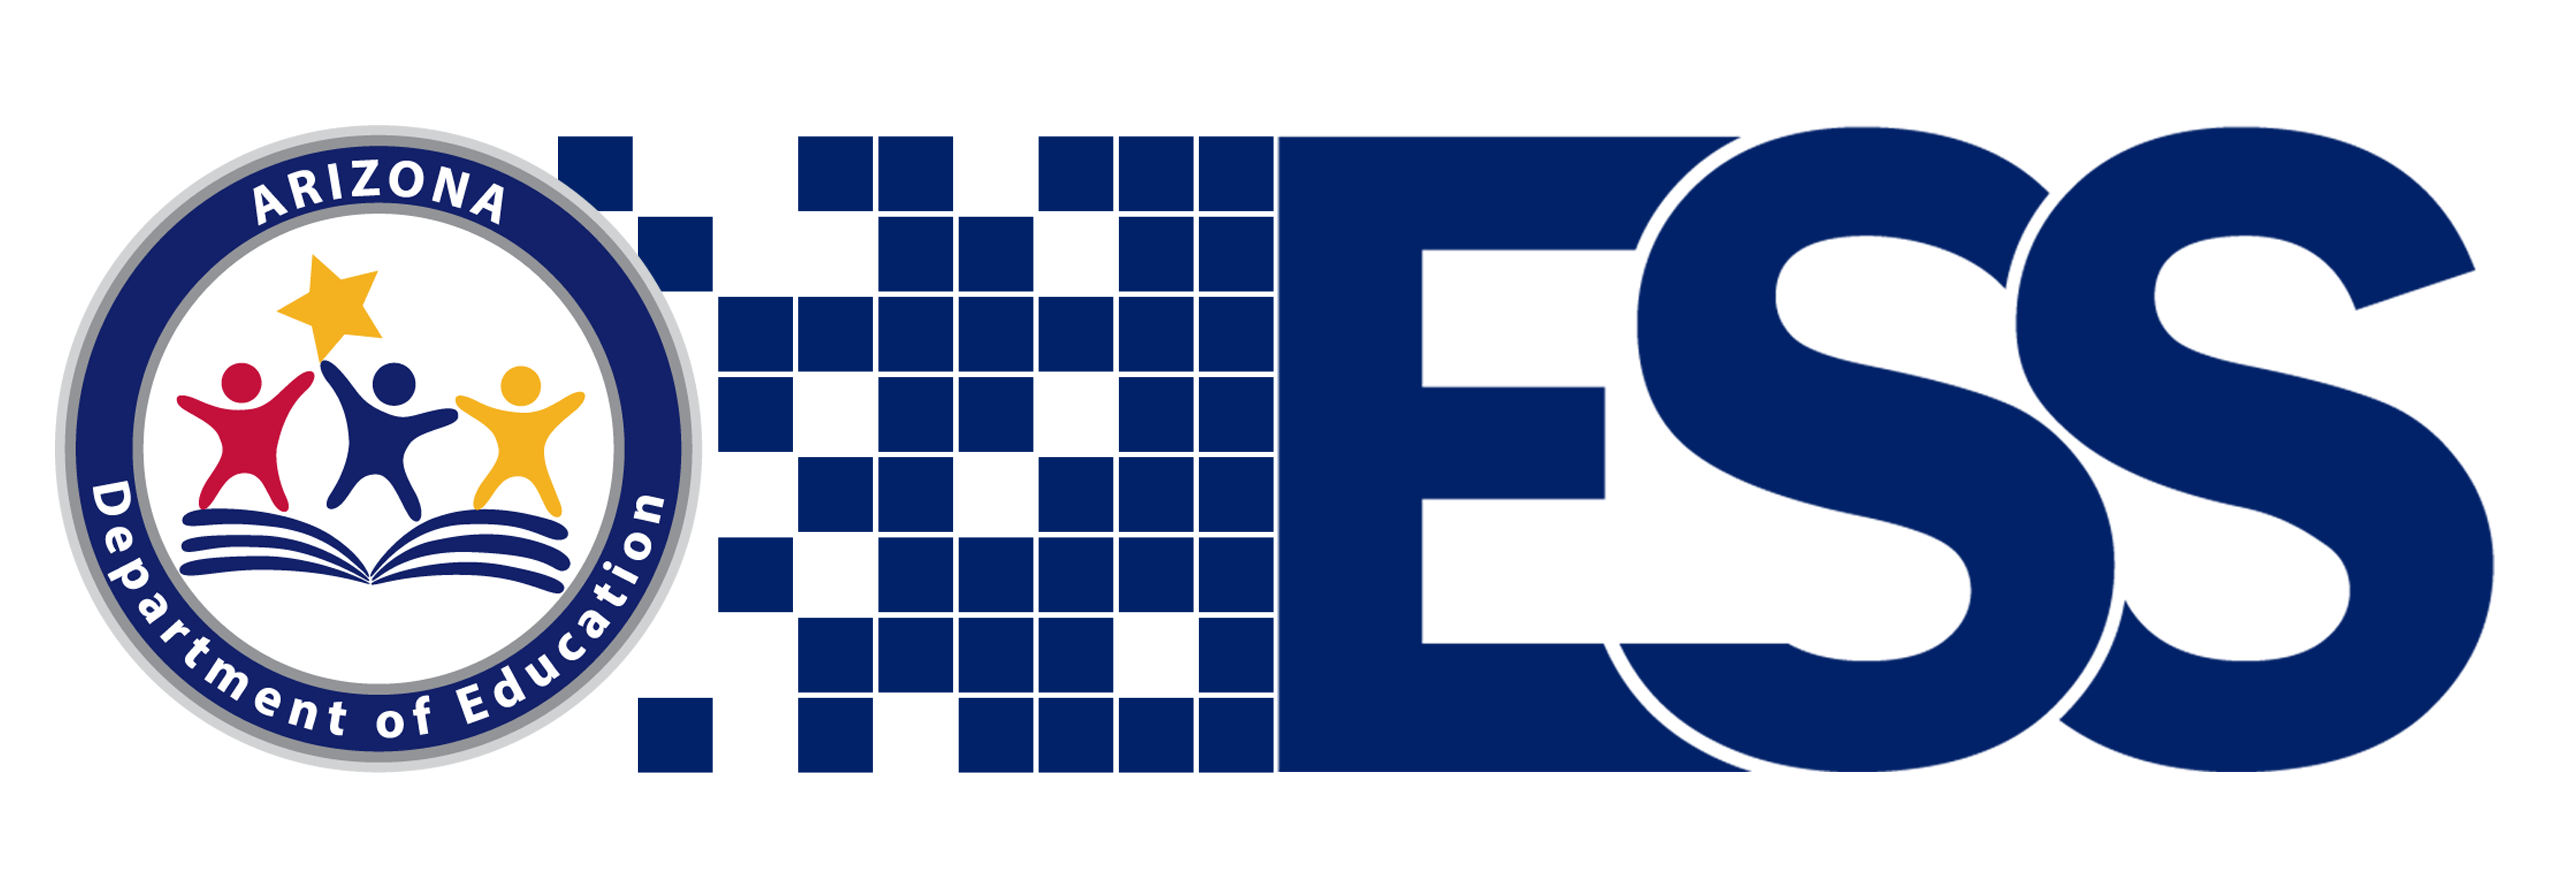 E S S logo